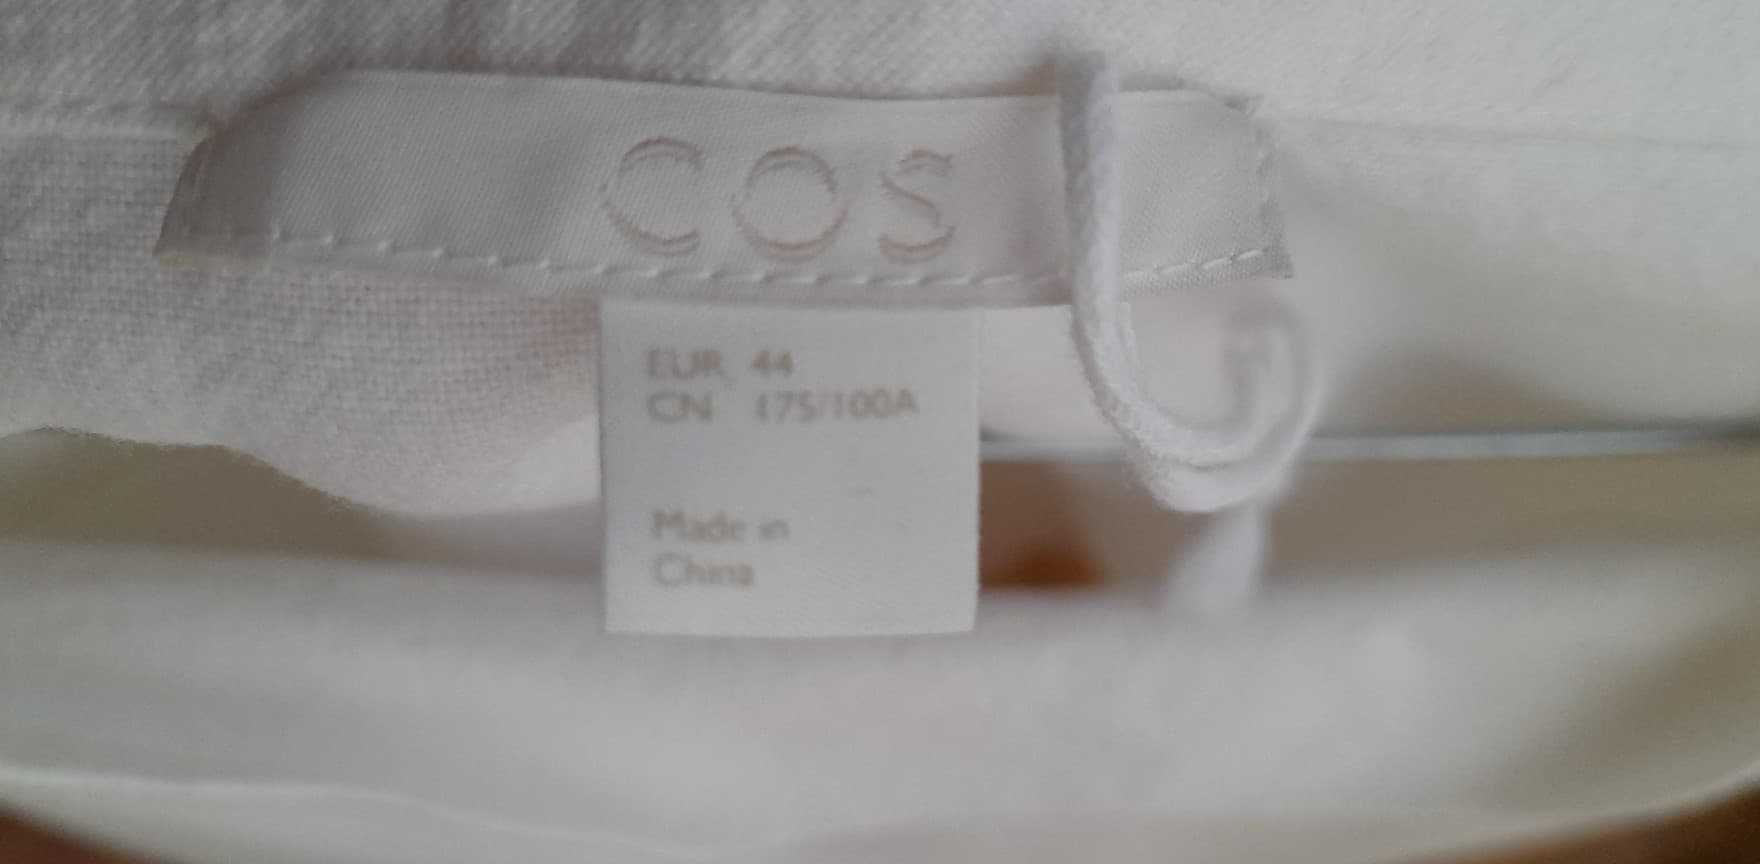 biała bluza COS (HM) damska L